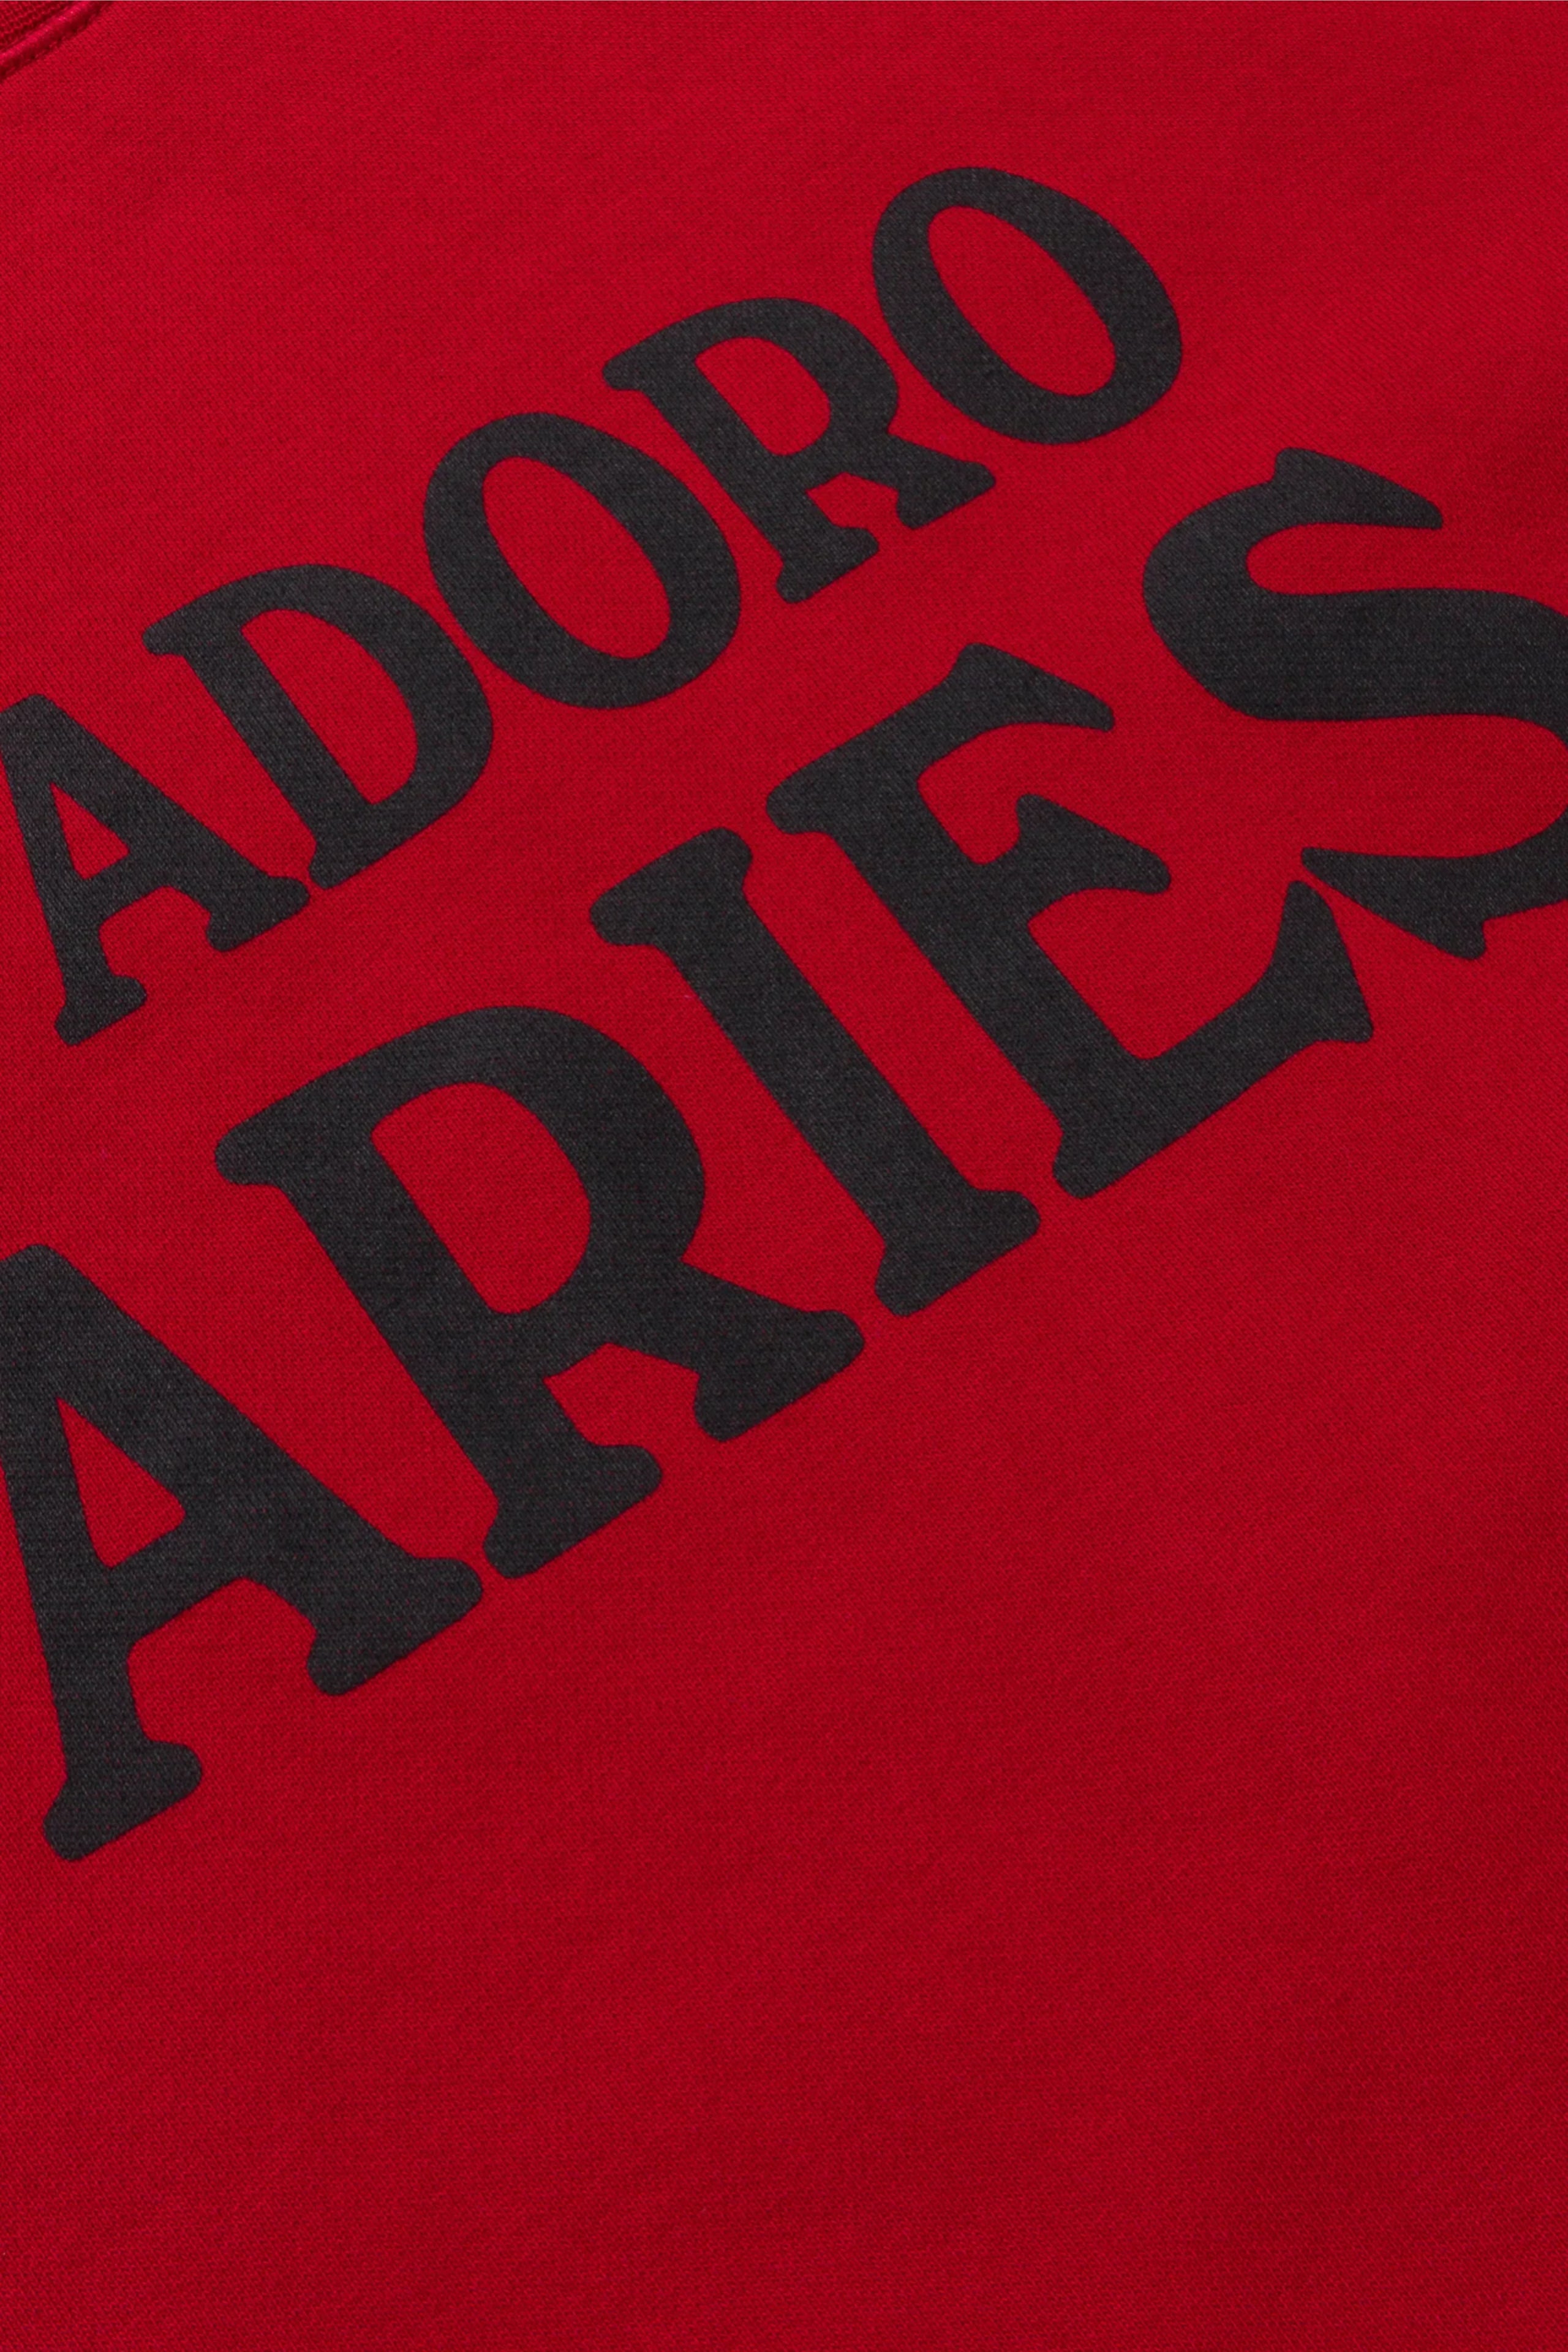 Aries J’Adoro Aries Sweat Baby Red